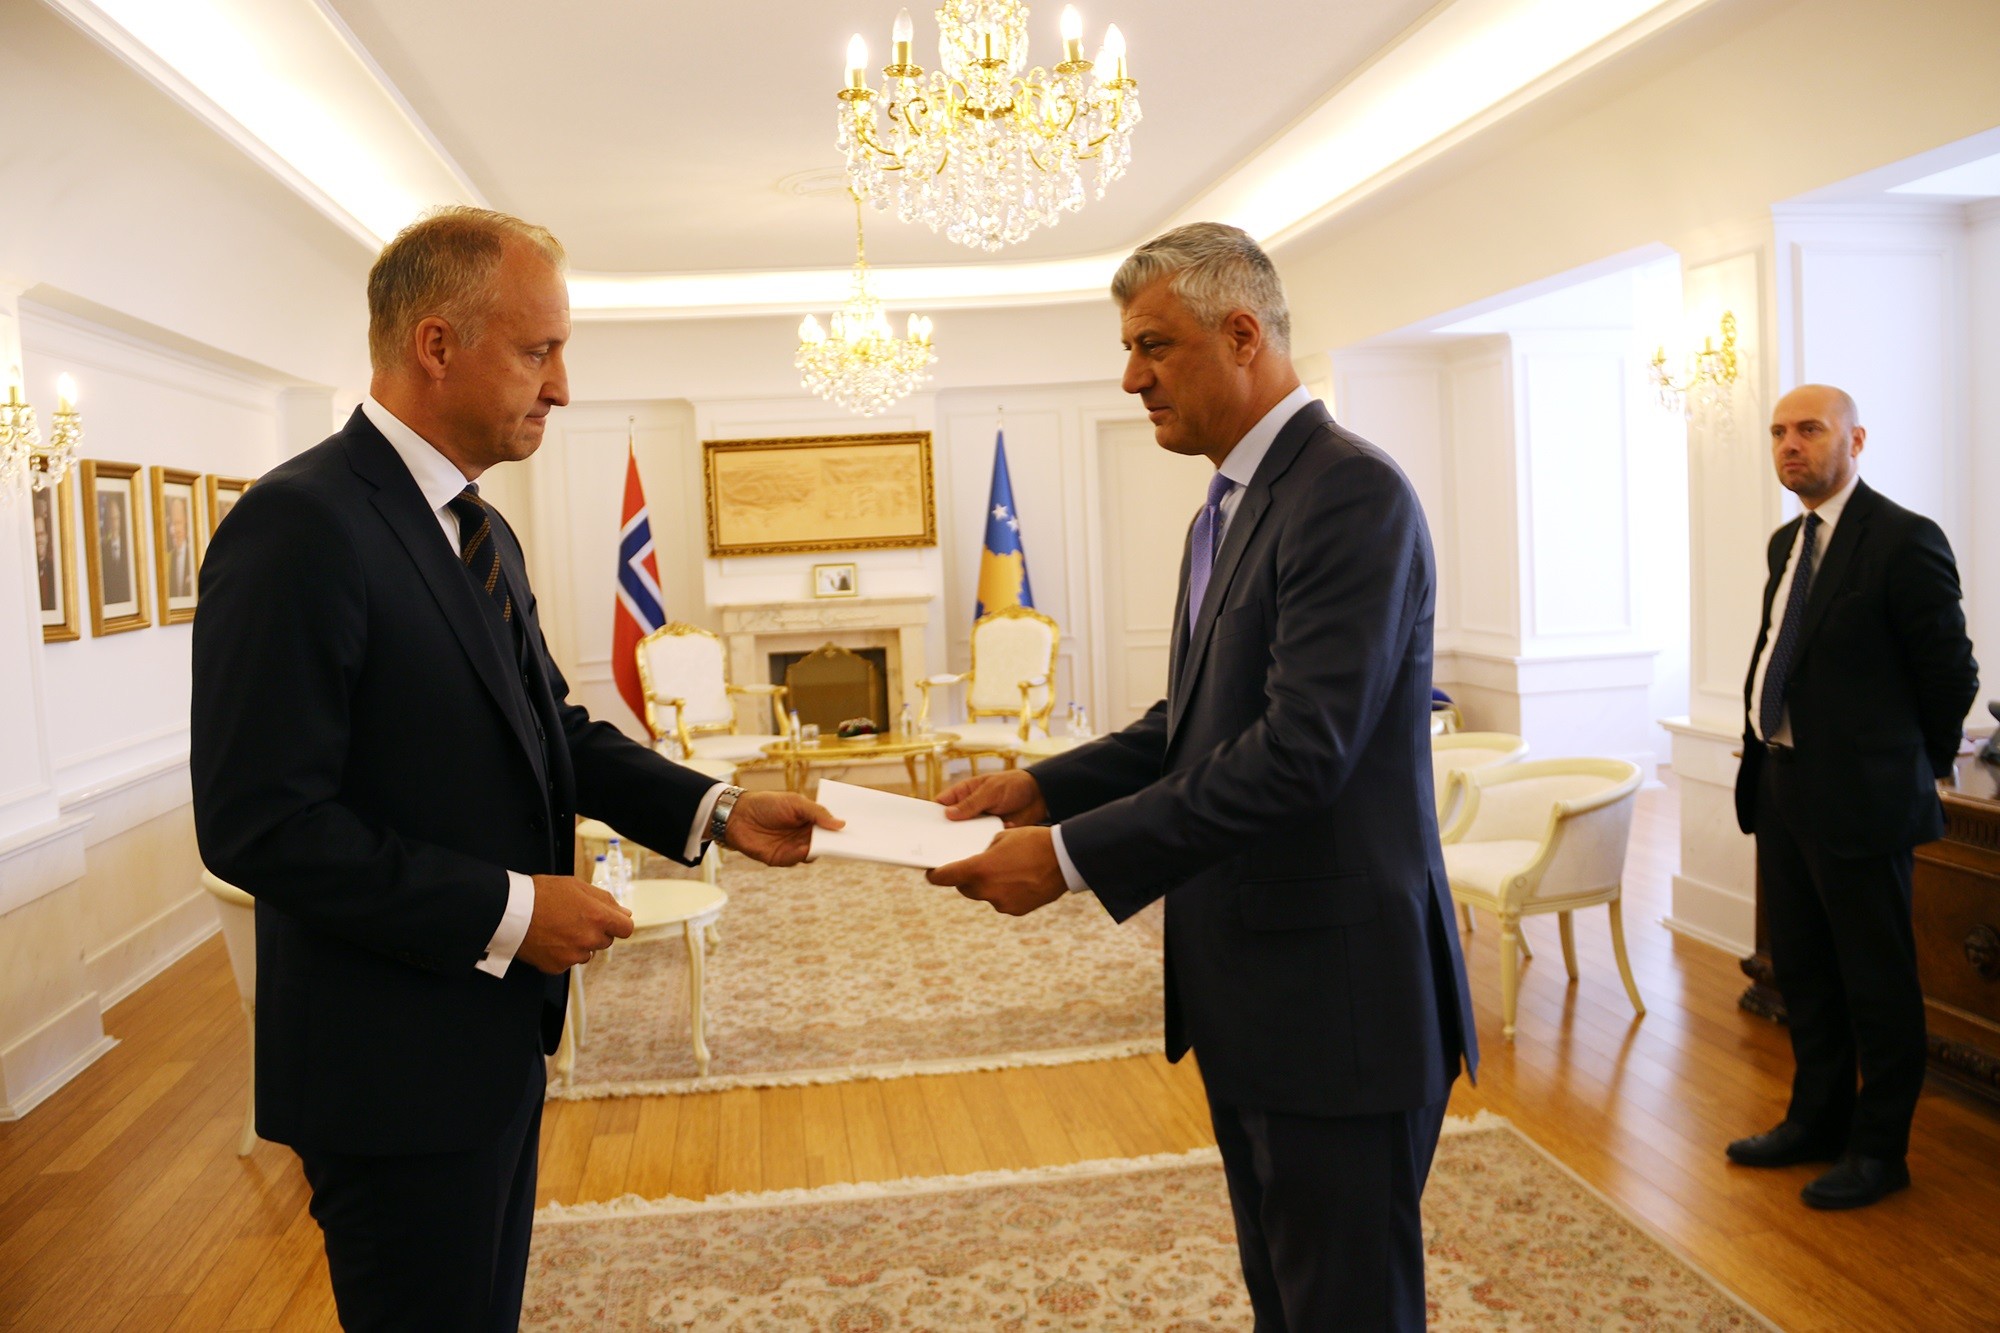 Presidenti Thaçi pranoi kredencialet nga ambasadori i ri i Norvegjisë për Kosovë